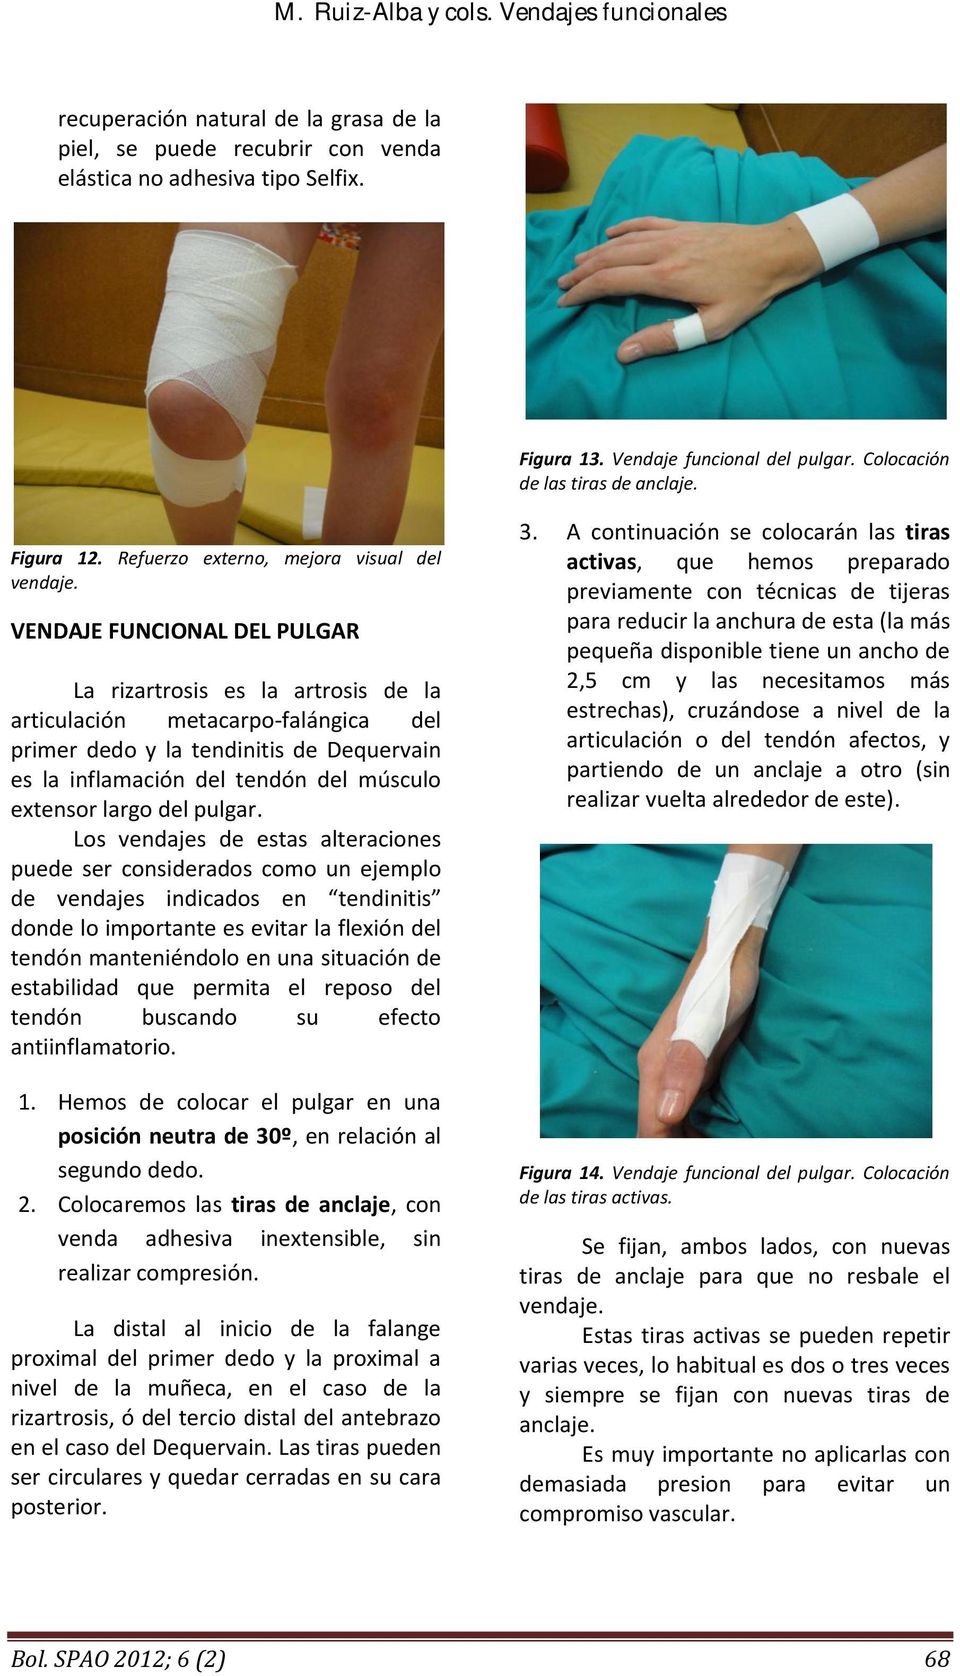 VENDAJE FUNCIONAL DEL PULGAR La rizartrosis es la artrosis de la articulación metacarpo-falángica del primer dedo y la tendinitis de Dequervain es la inflamación del tendón del músculo extensor largo